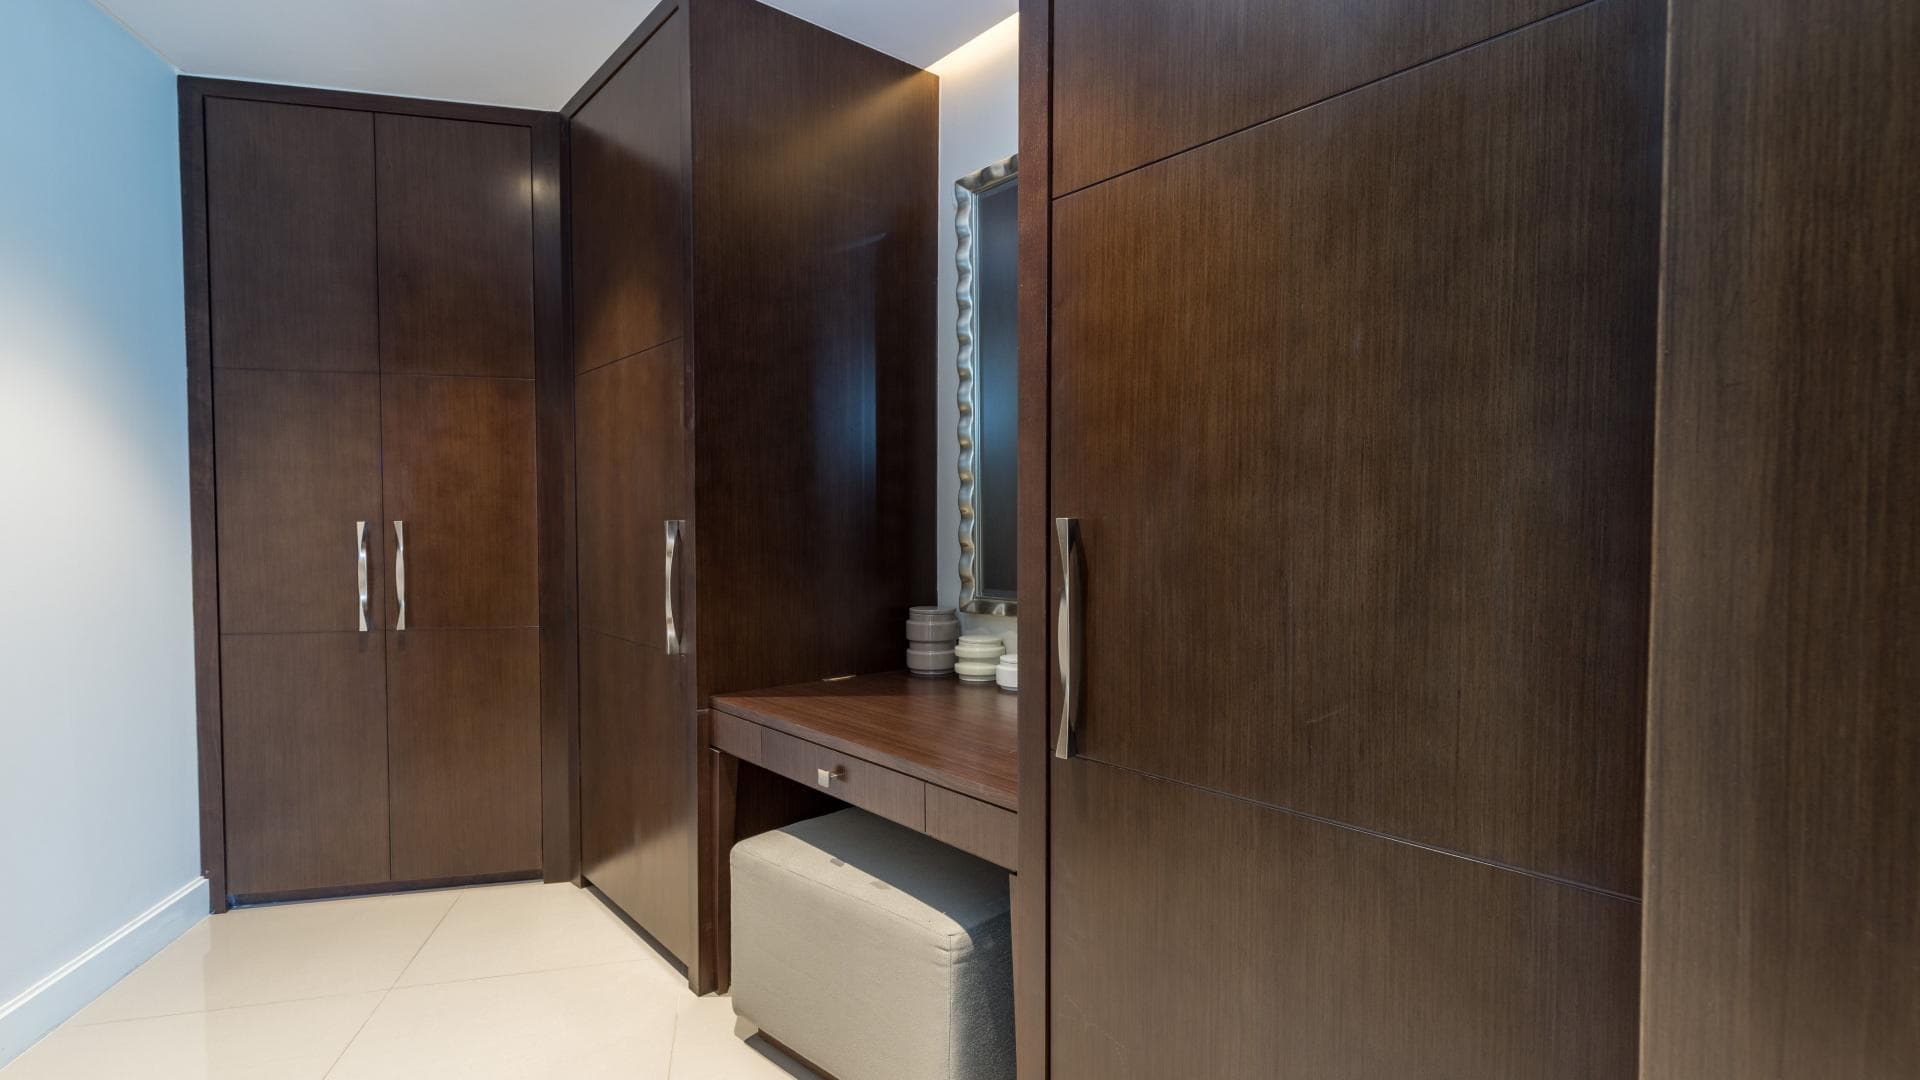 2 Bedroom Apartment For Rent Al Thamam 09 Lp36349 2520395e79ee3000.jpeg